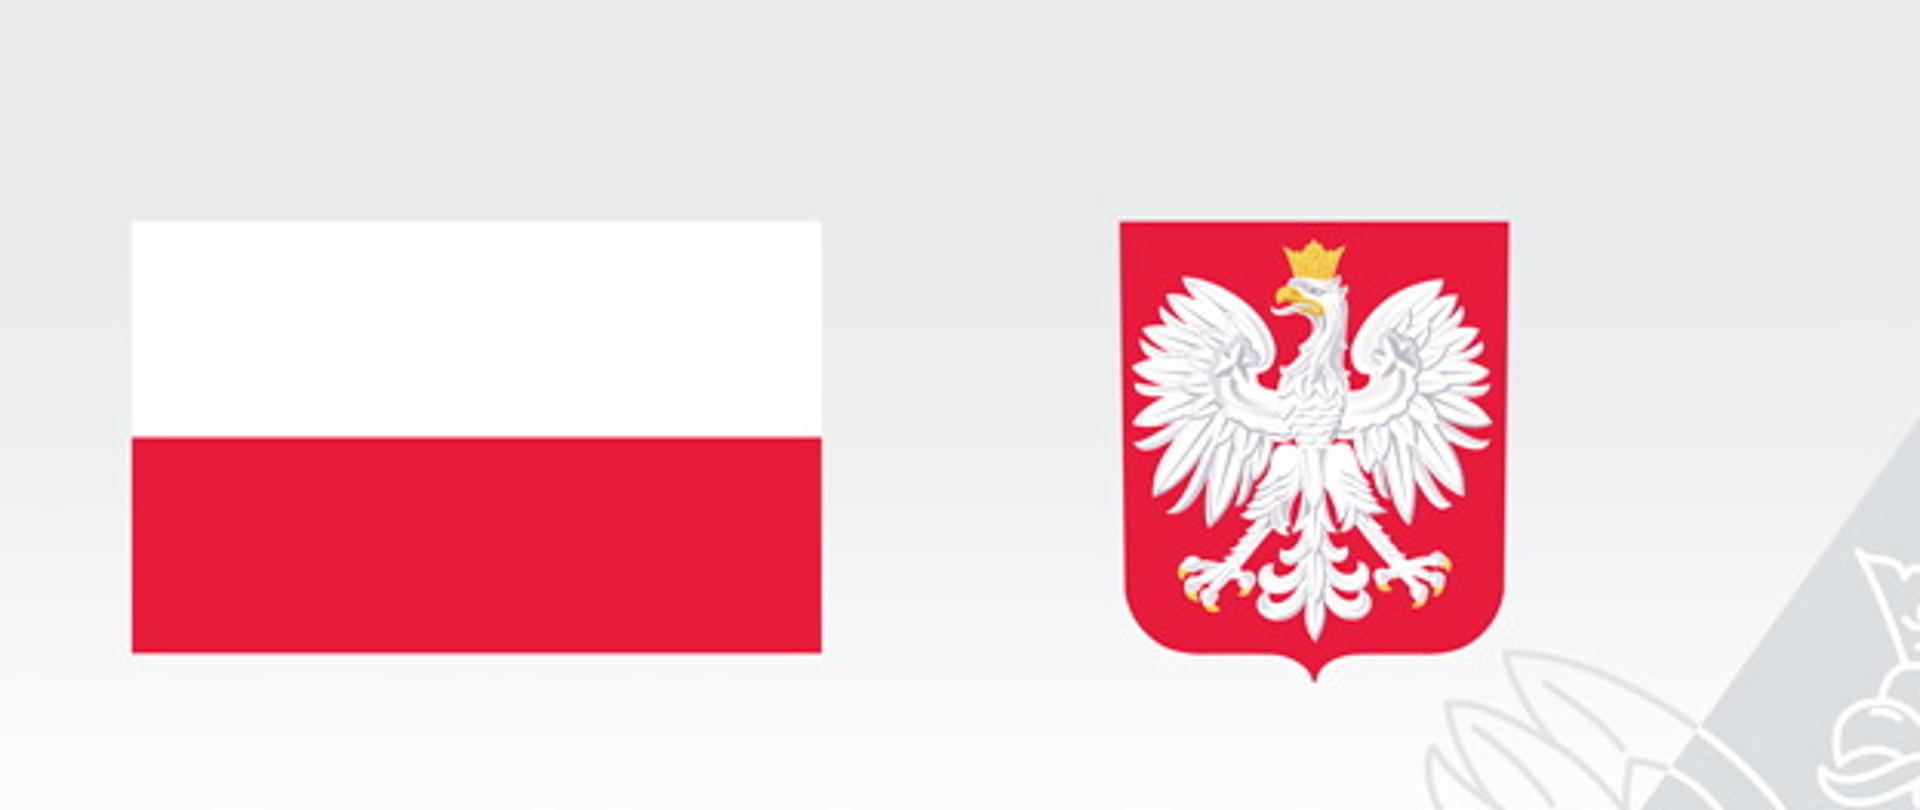 Biało - czerwona flaga polski obok niej biały orzeł na czerwonym tle, na dole czarny napis Fundusz Dróg Samorządowych 